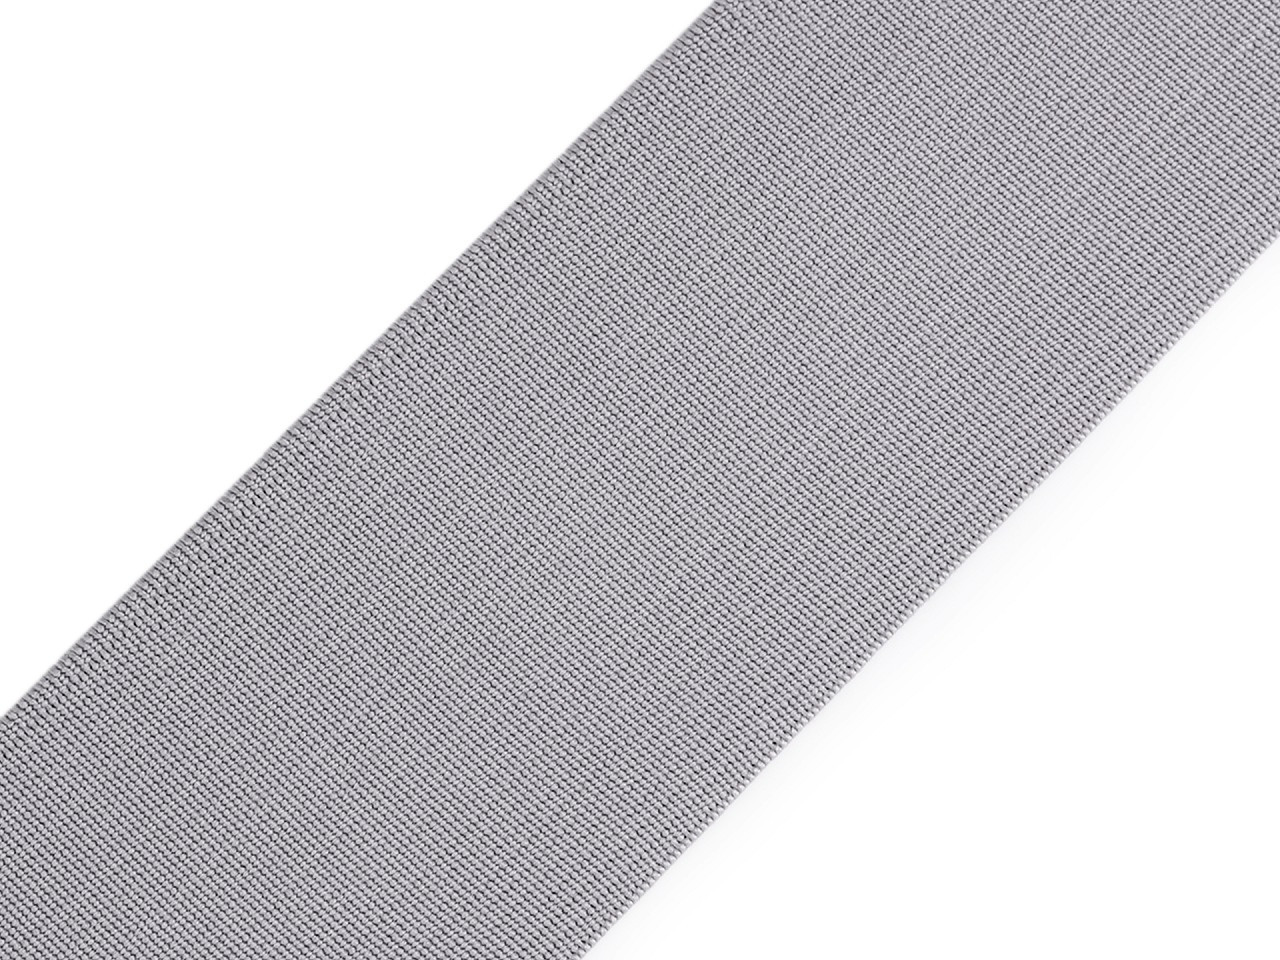 Pruženka hladká šíře 50 mm tkaná barevná, barva 1006 šedá nejsvětlější